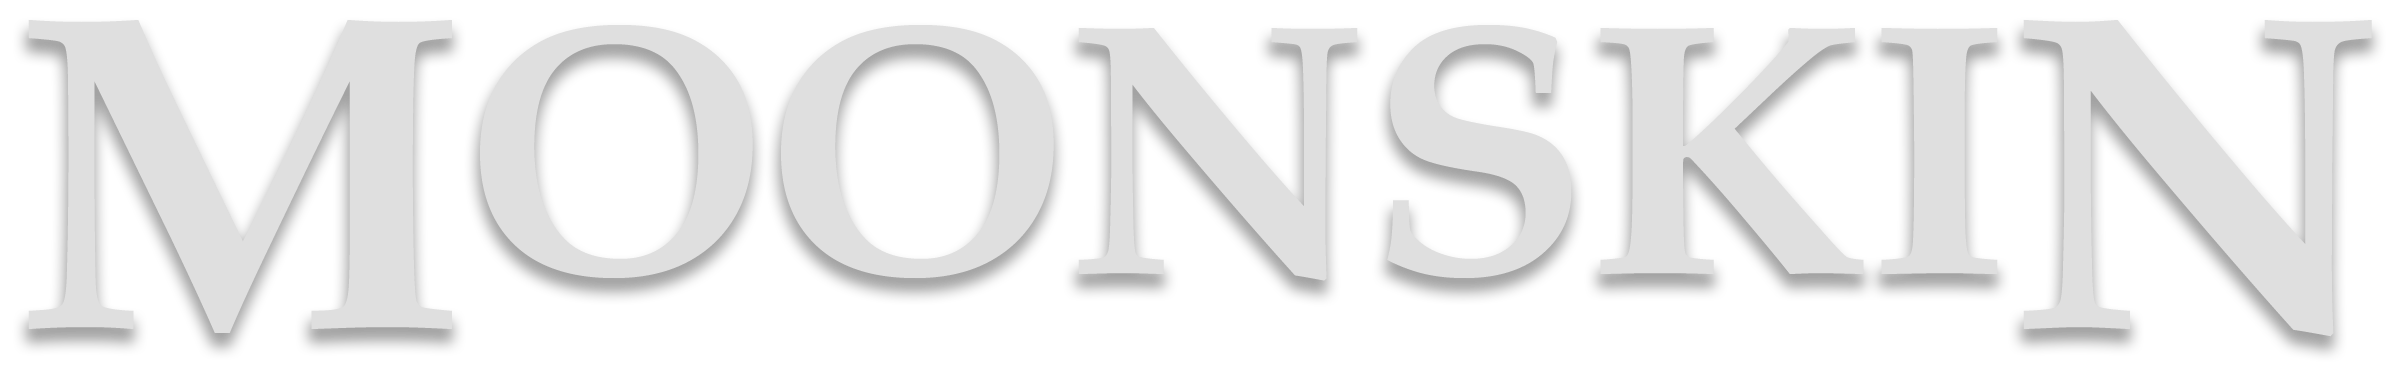 Moonskin logo